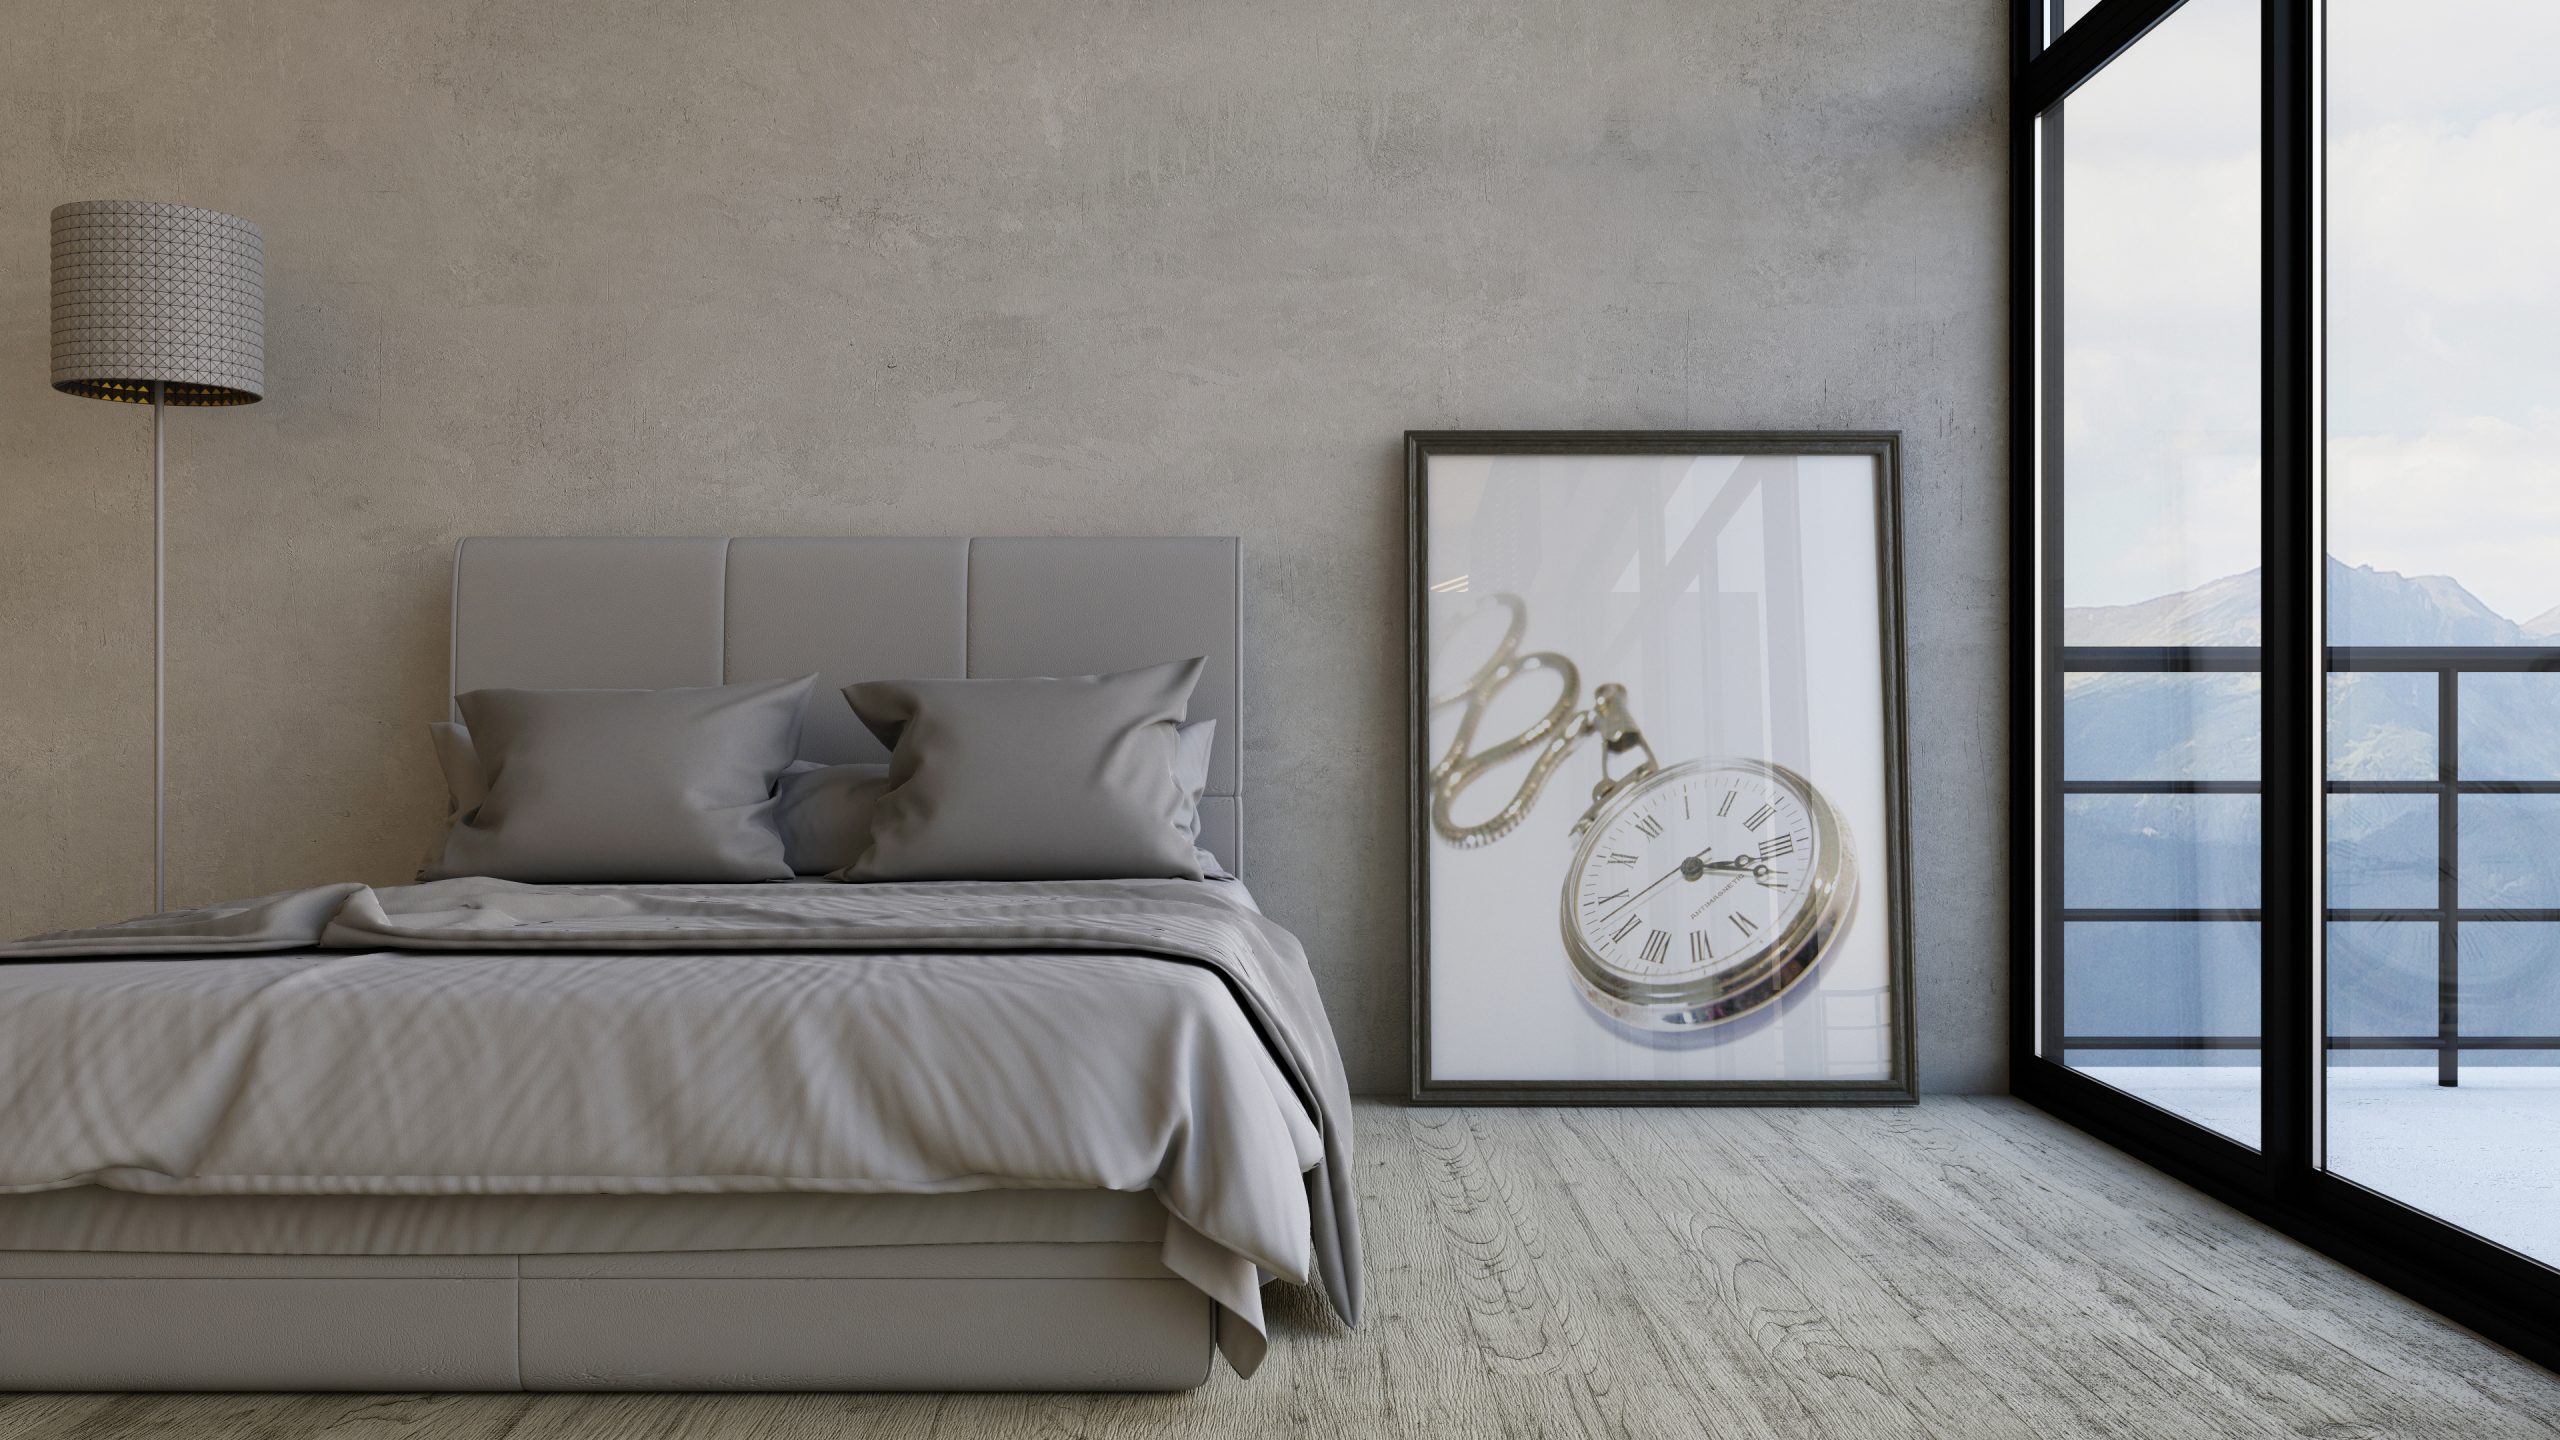 快眠につながる寝室環境の作り方 音と光編 Weara Blog ブログ 24時間365日のウェアラブルデバイス Weara ウェアラ